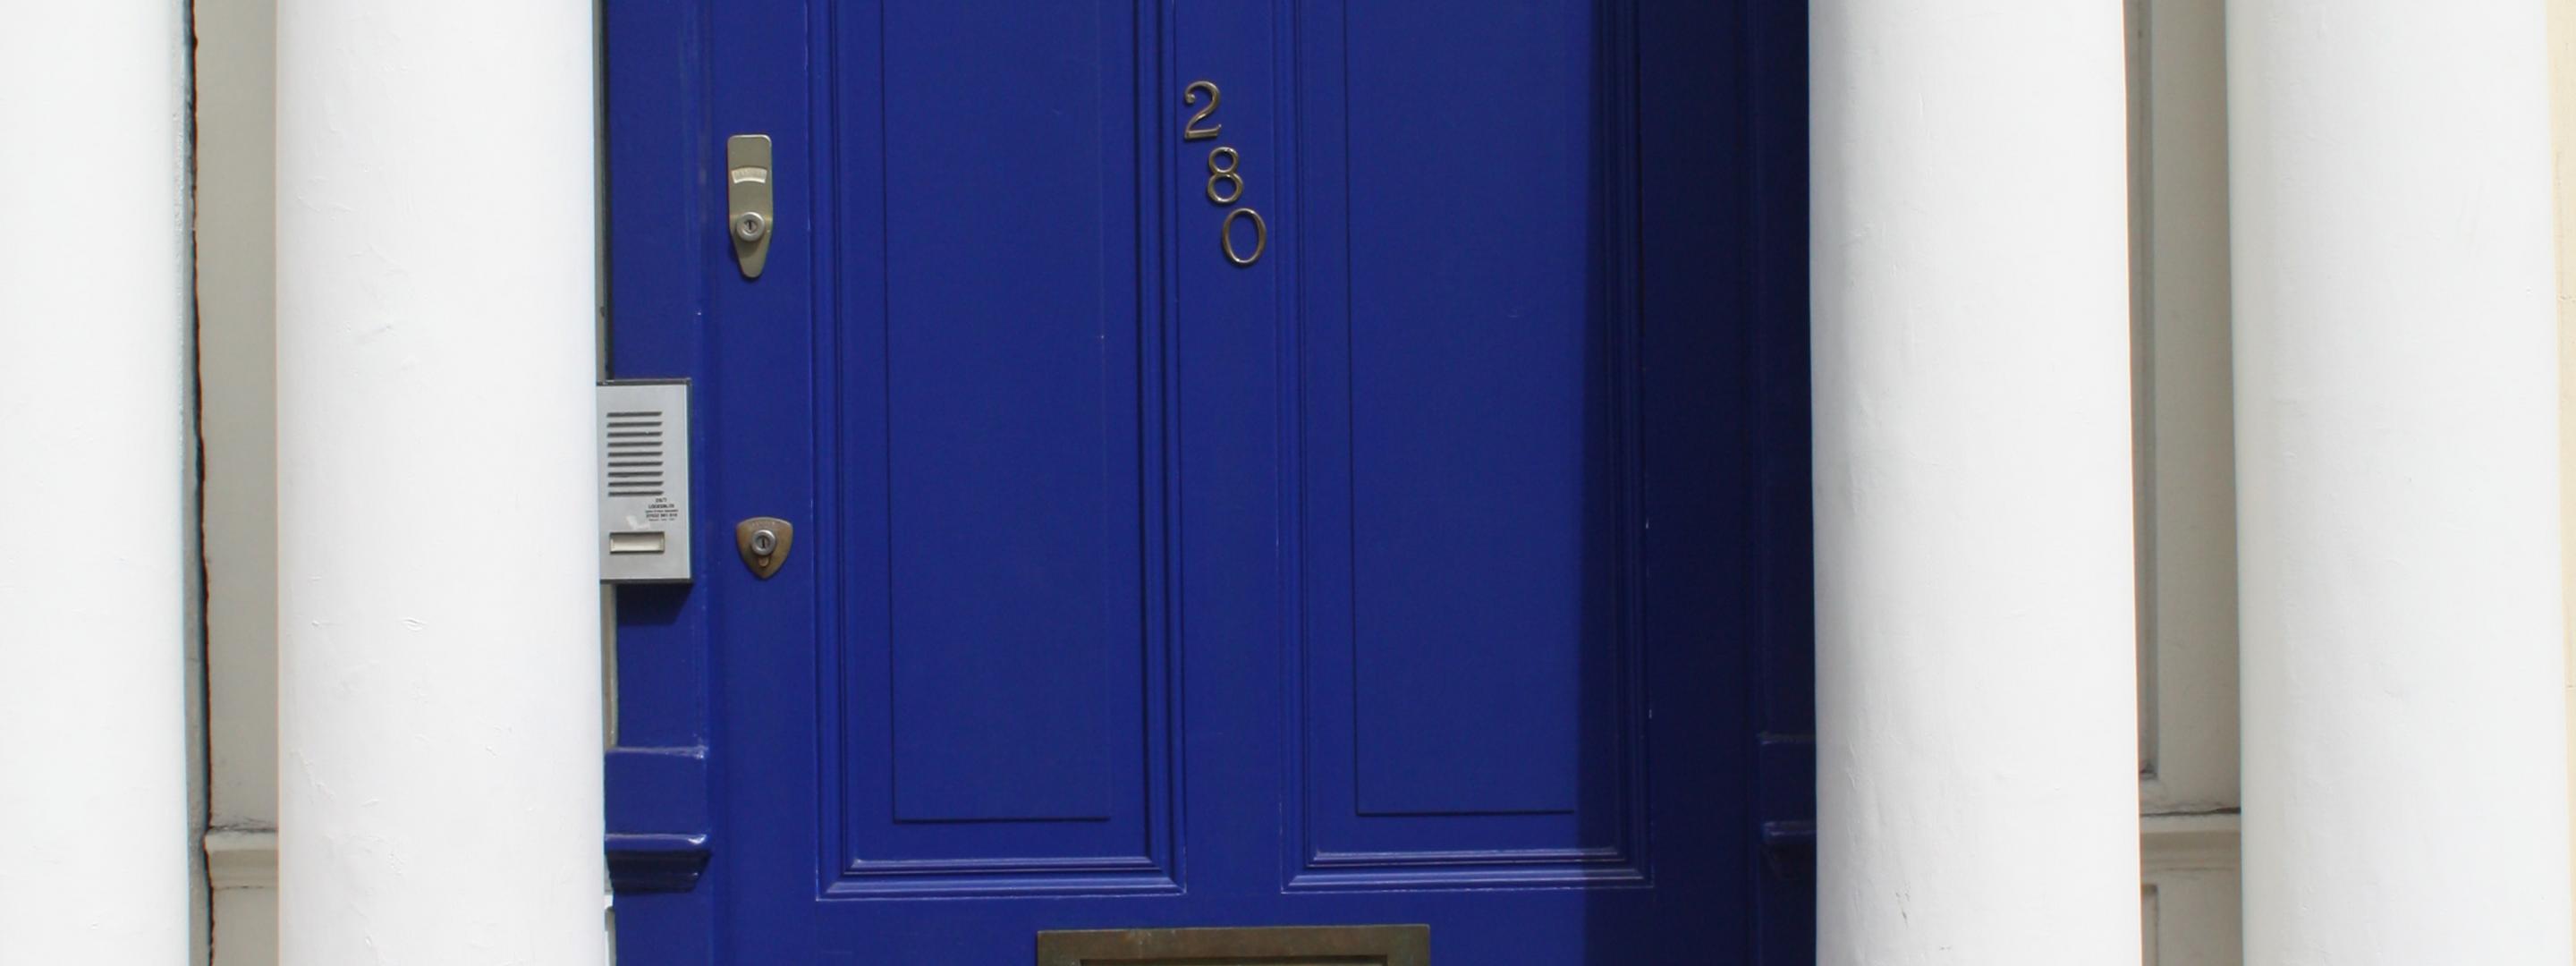 Explore - The Blue Door, Notting Hill (not the original door) tile